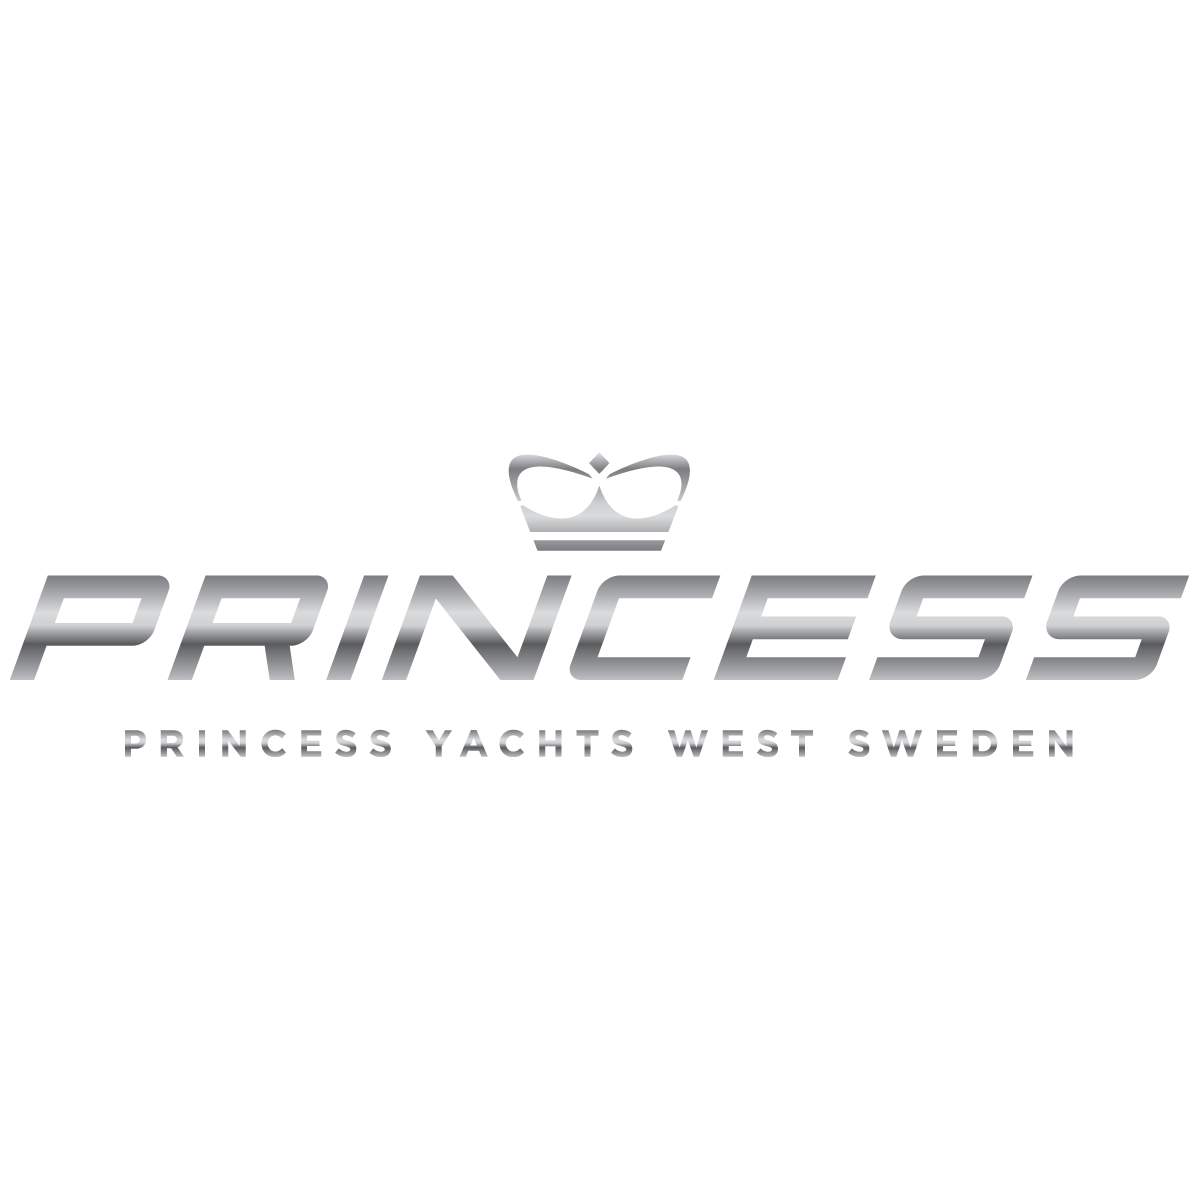 princess yachts logo vector